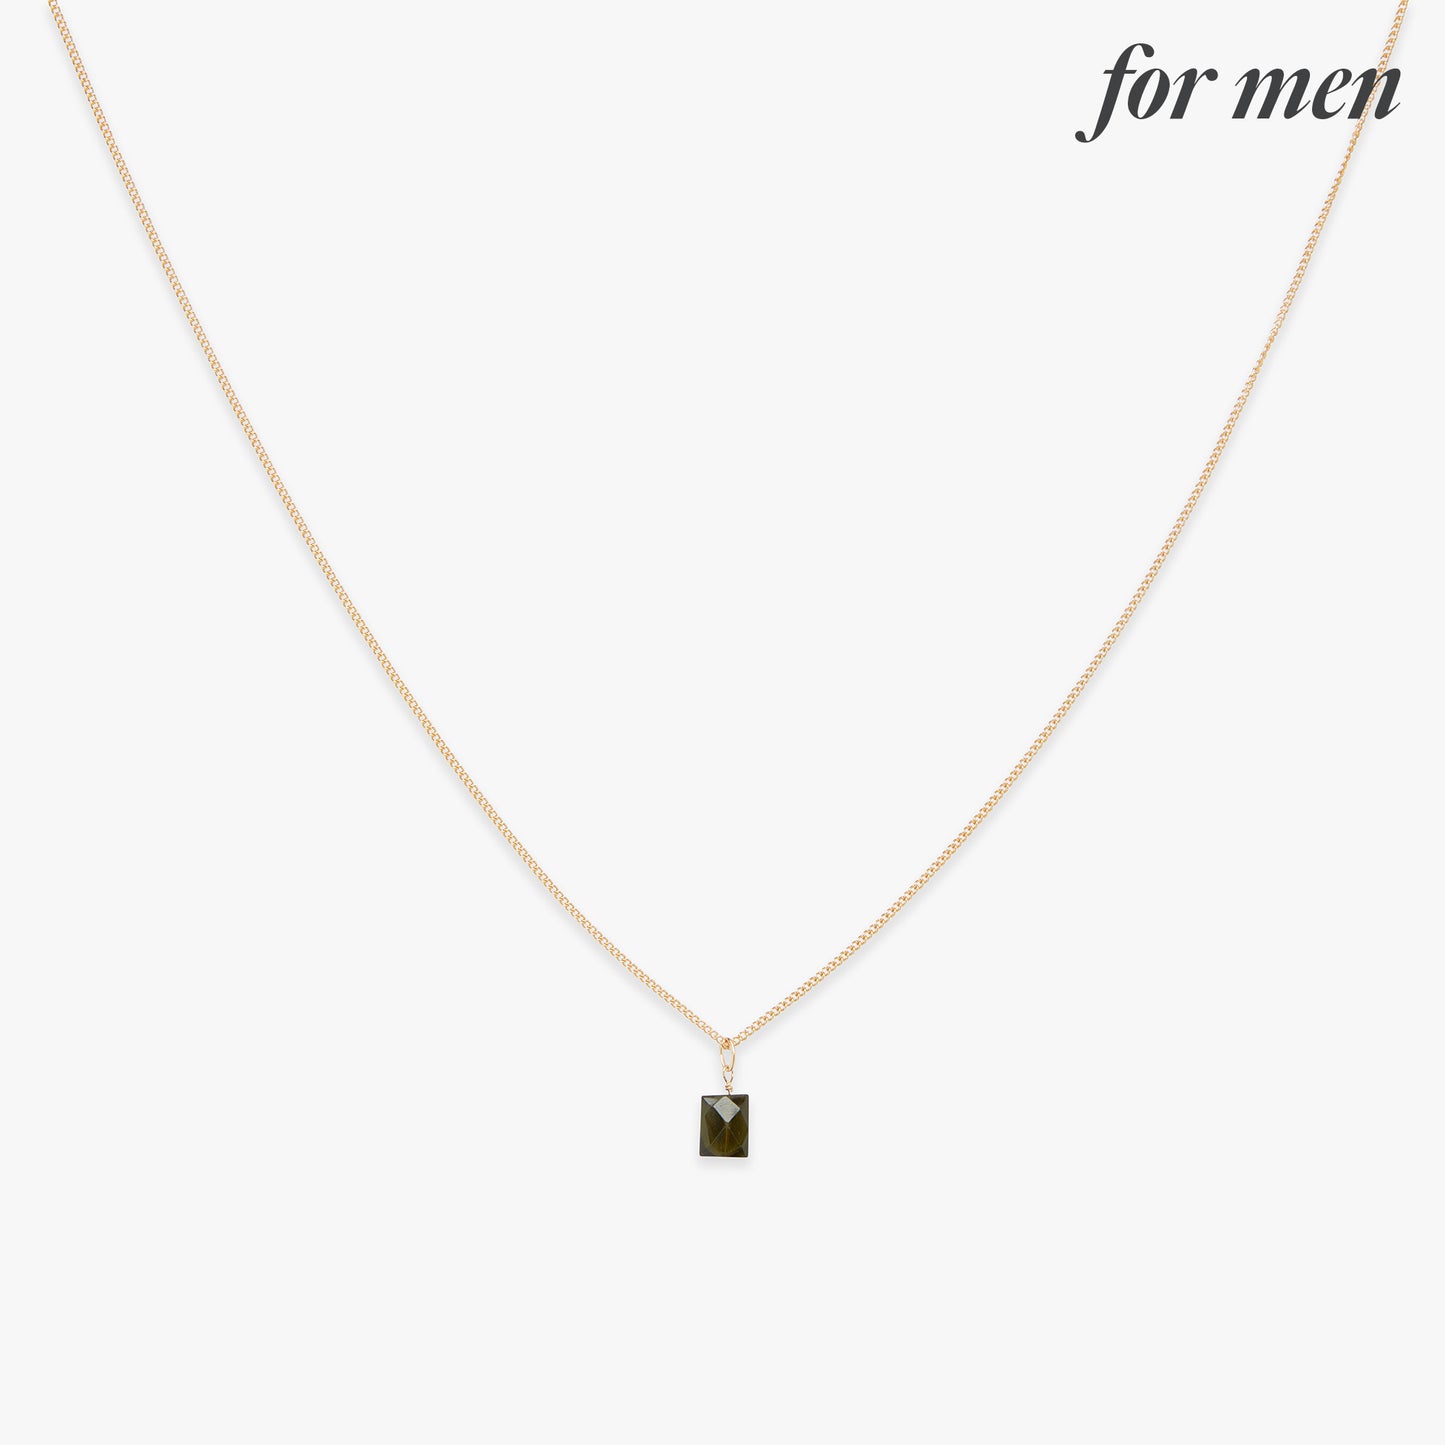 Minimal Janny necklace gold filled for men